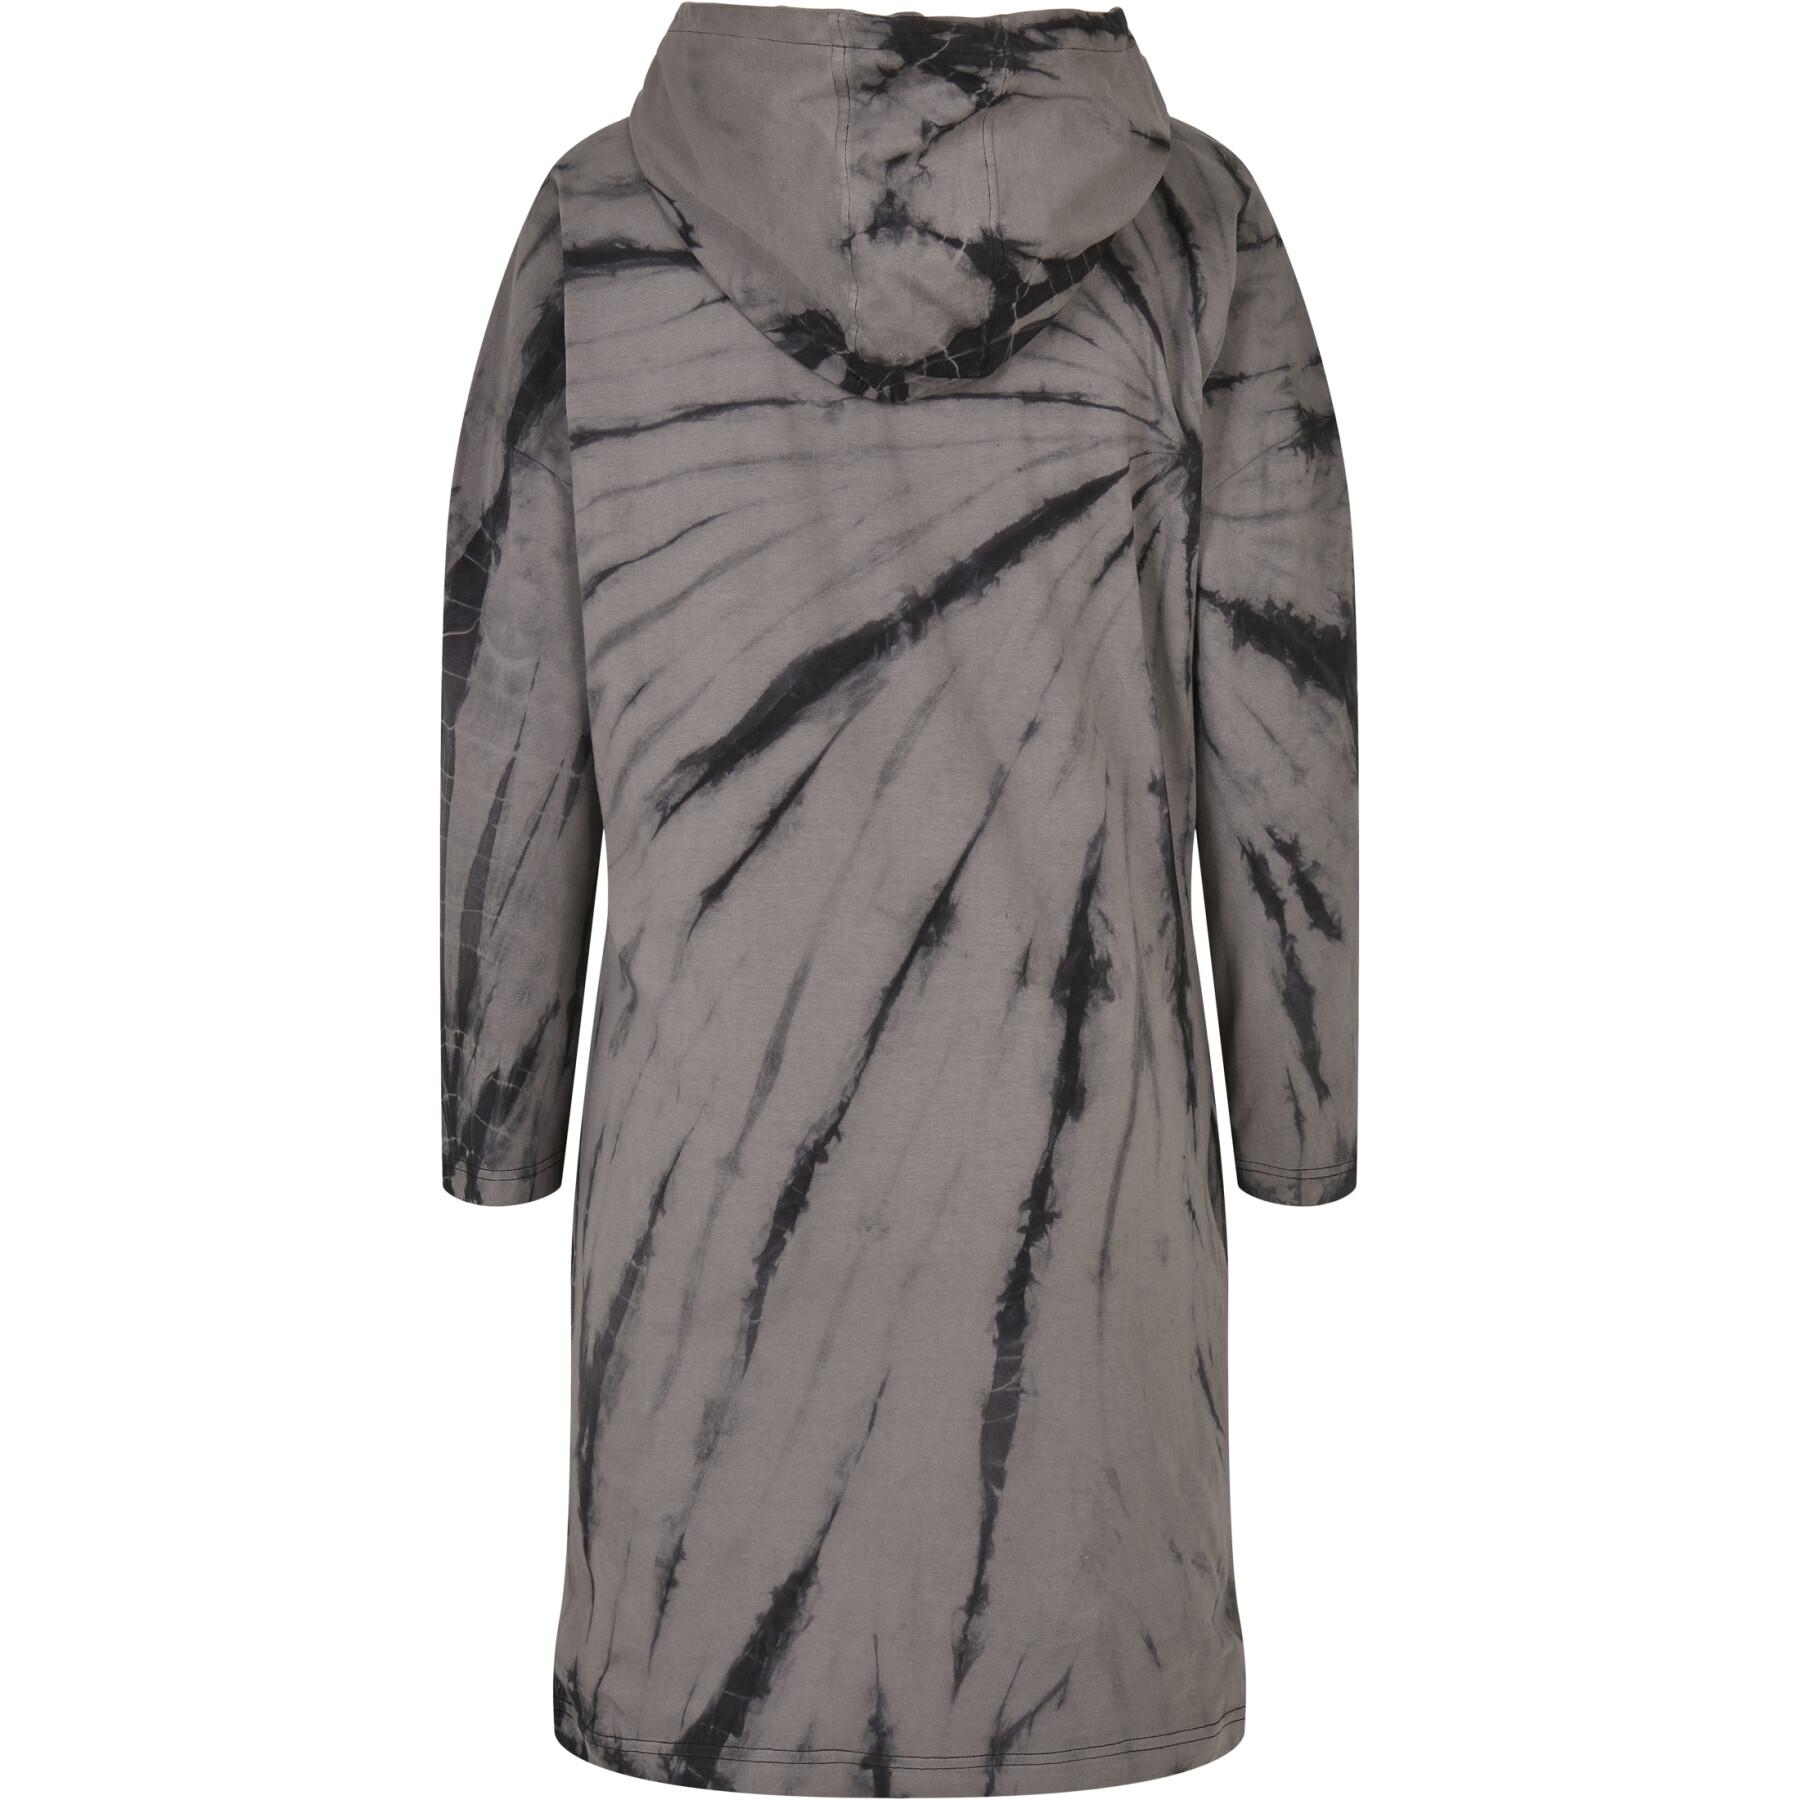 Women's oversized hooded dress Urban Classics tie-dye (GT)